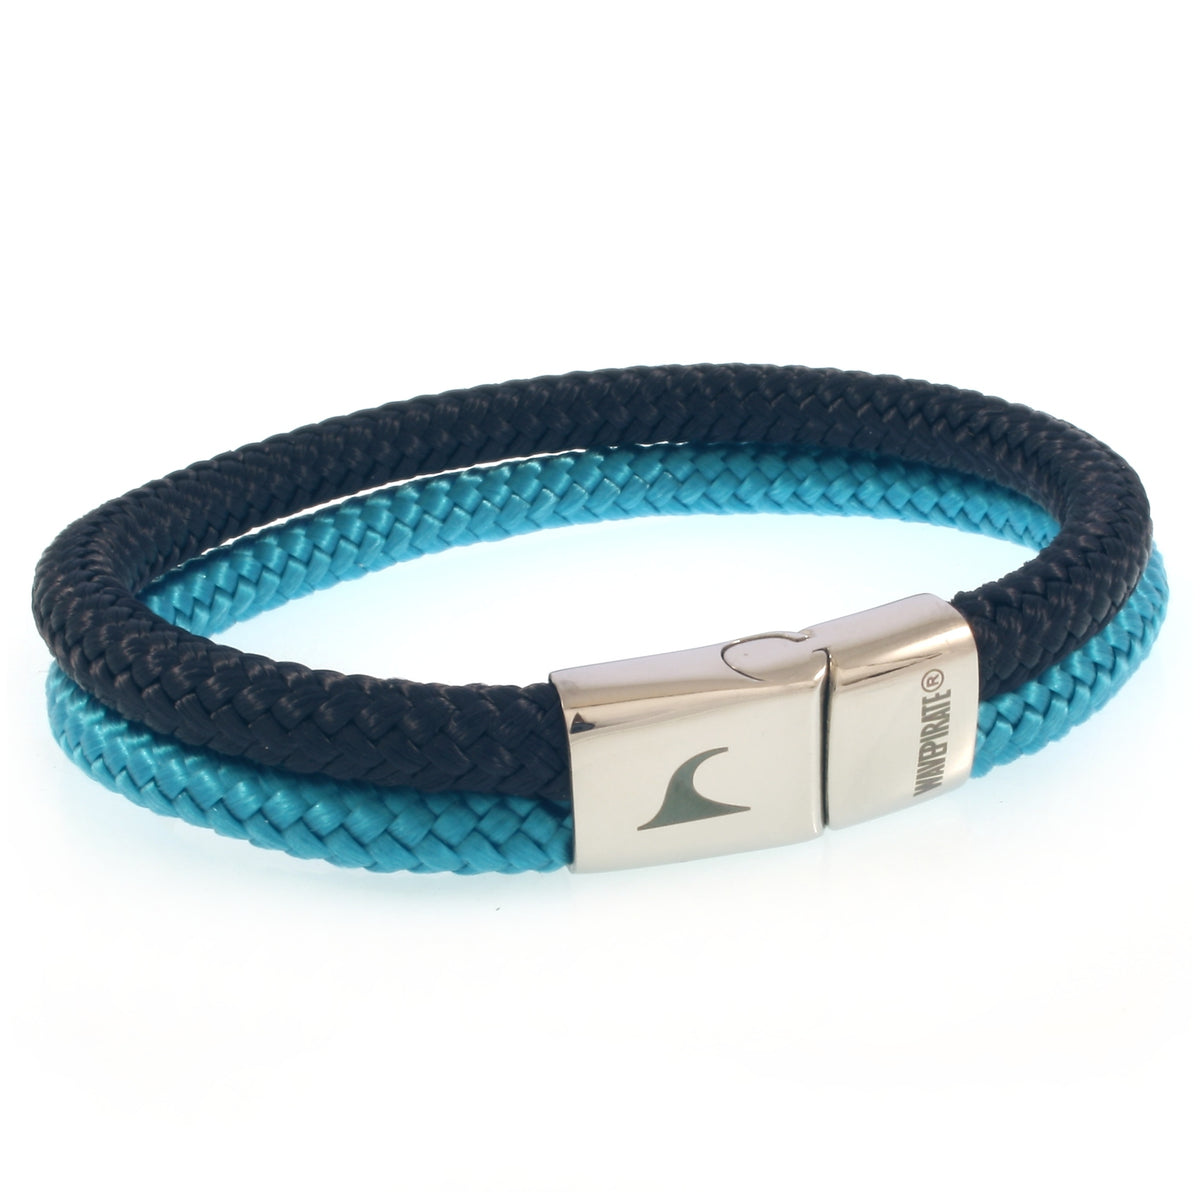 Herren-Segeltau-Armband-Tarifa-nachtblau-blau-geflochten-Edelstahlverschluss-vorn-wavepirate-shop-st